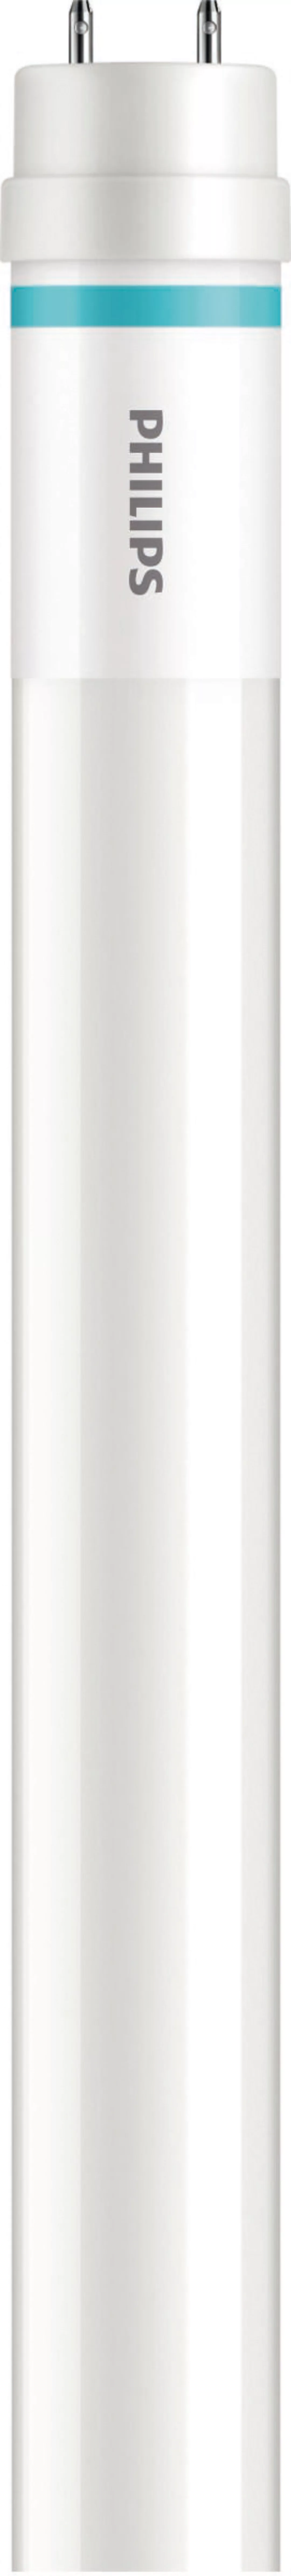 Philips Lighting LED-Tube T8 f. KVG/VVG G13, 840, 1500mm MASLEDtube #316881 günstig online kaufen